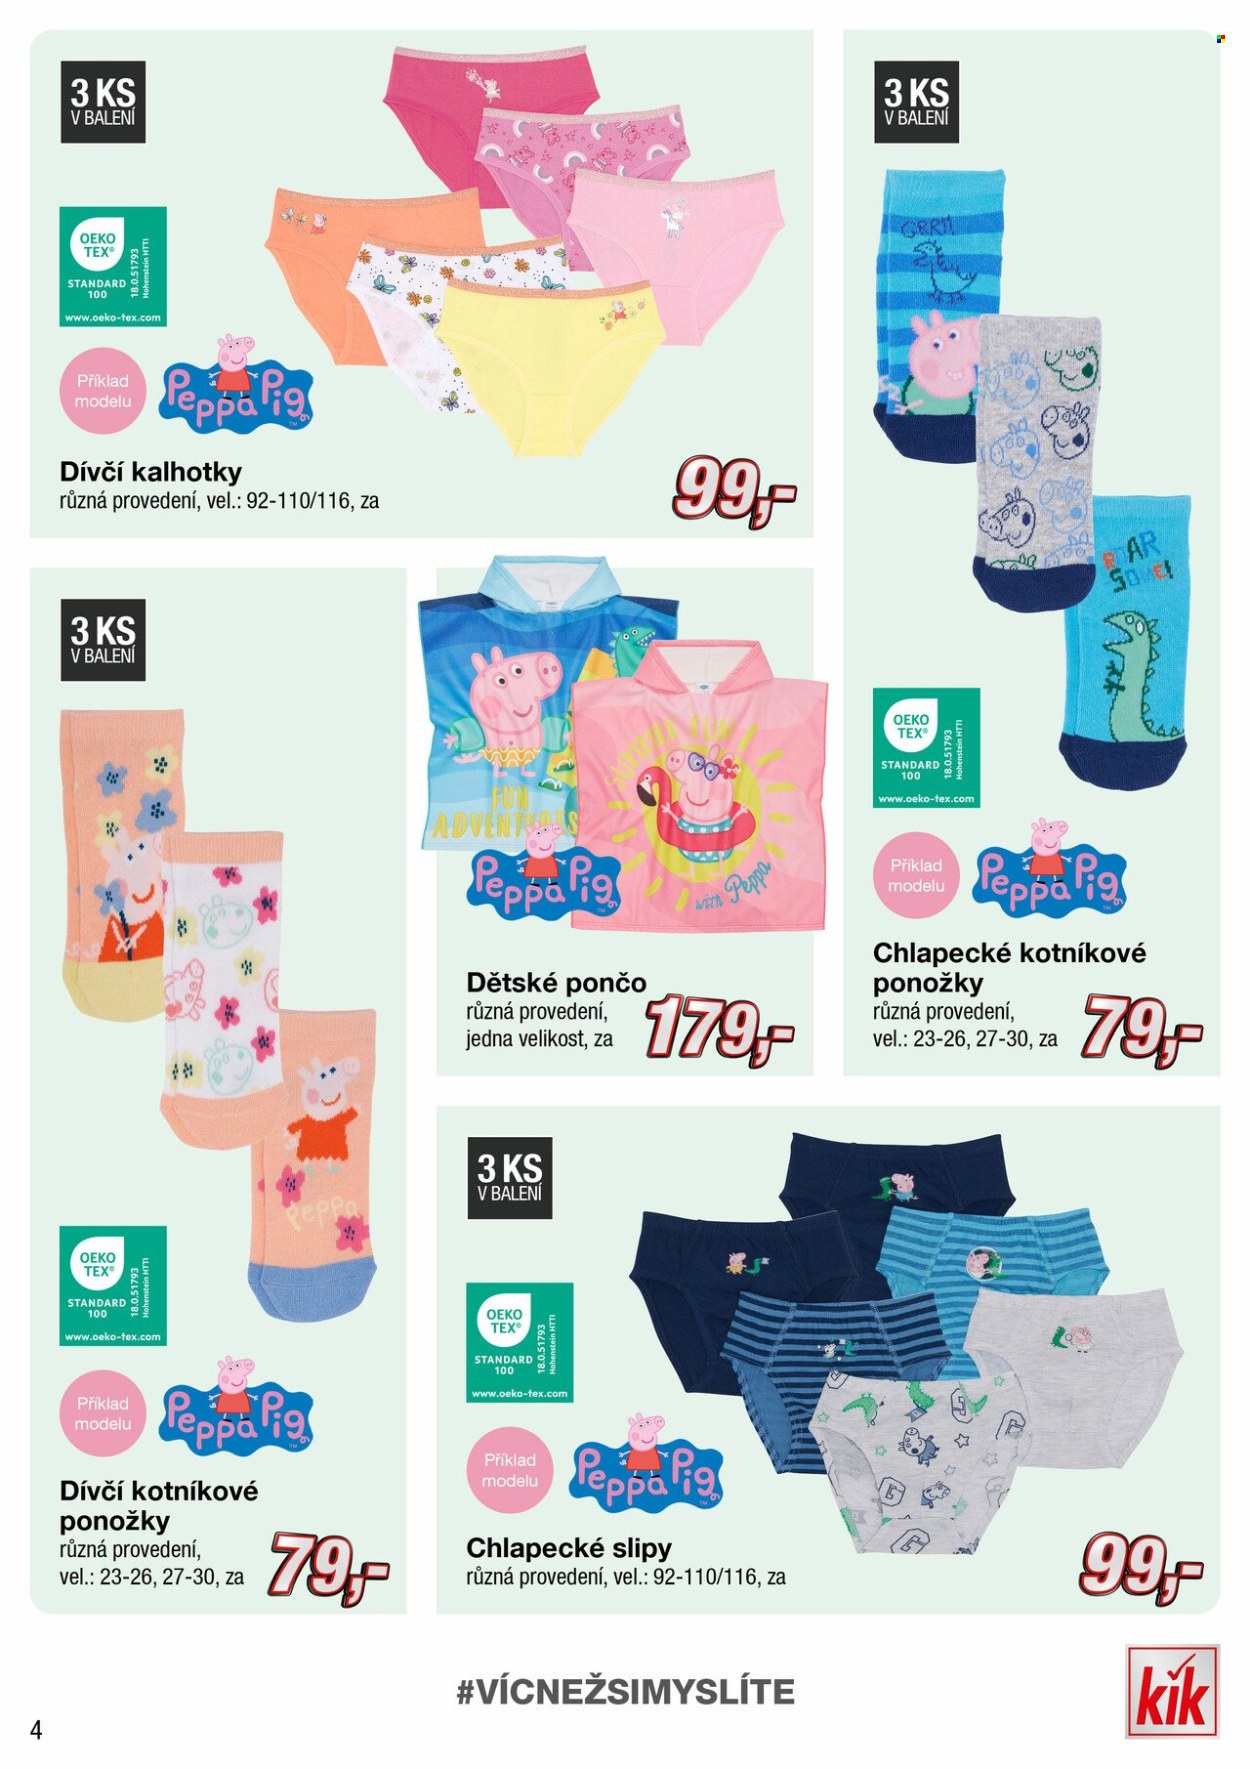 thumbnail - Leták kik - Produkty v akci - Peppa Pig, pončo, kalhotky, slipy, dívčí kalhotky, chlapecké slipy, spodní prádlo, ponožky. Strana 4.